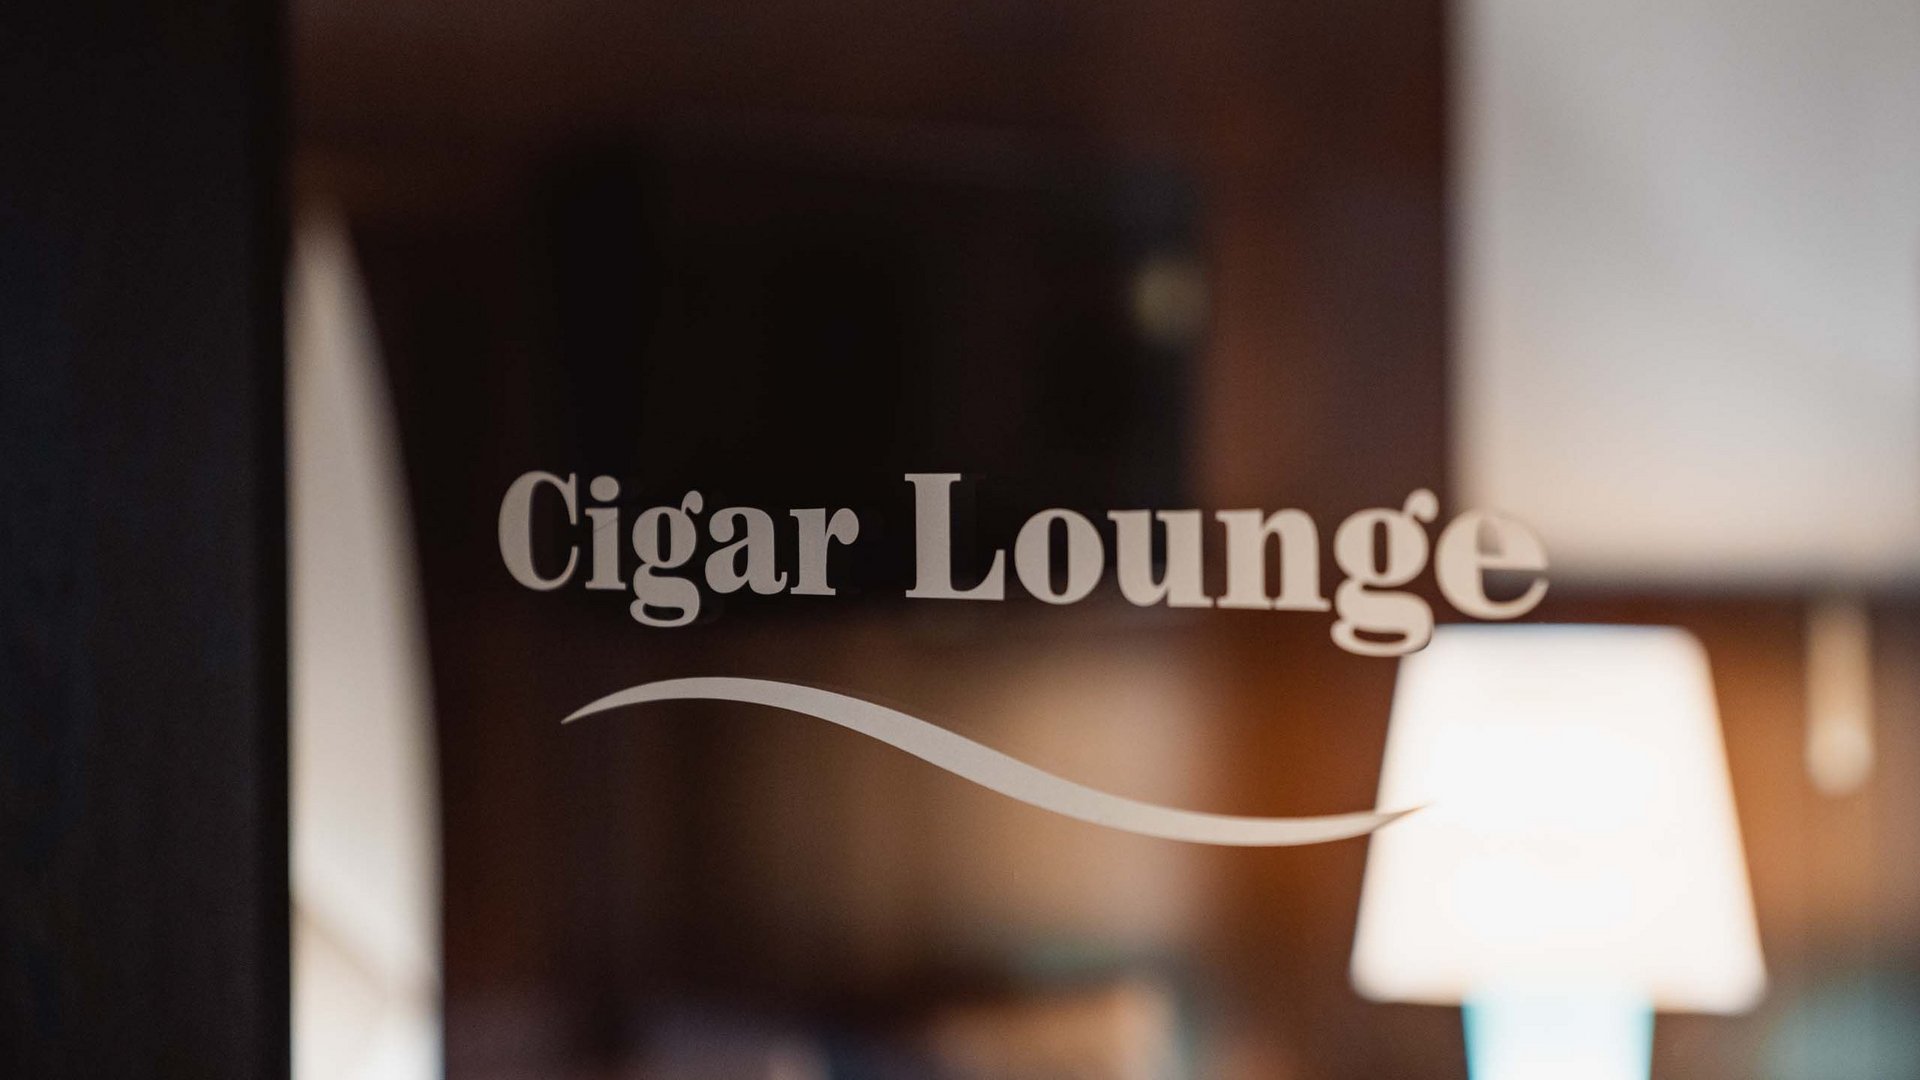 Ihr Hotel mit Zigarrenlounge: Urthaler